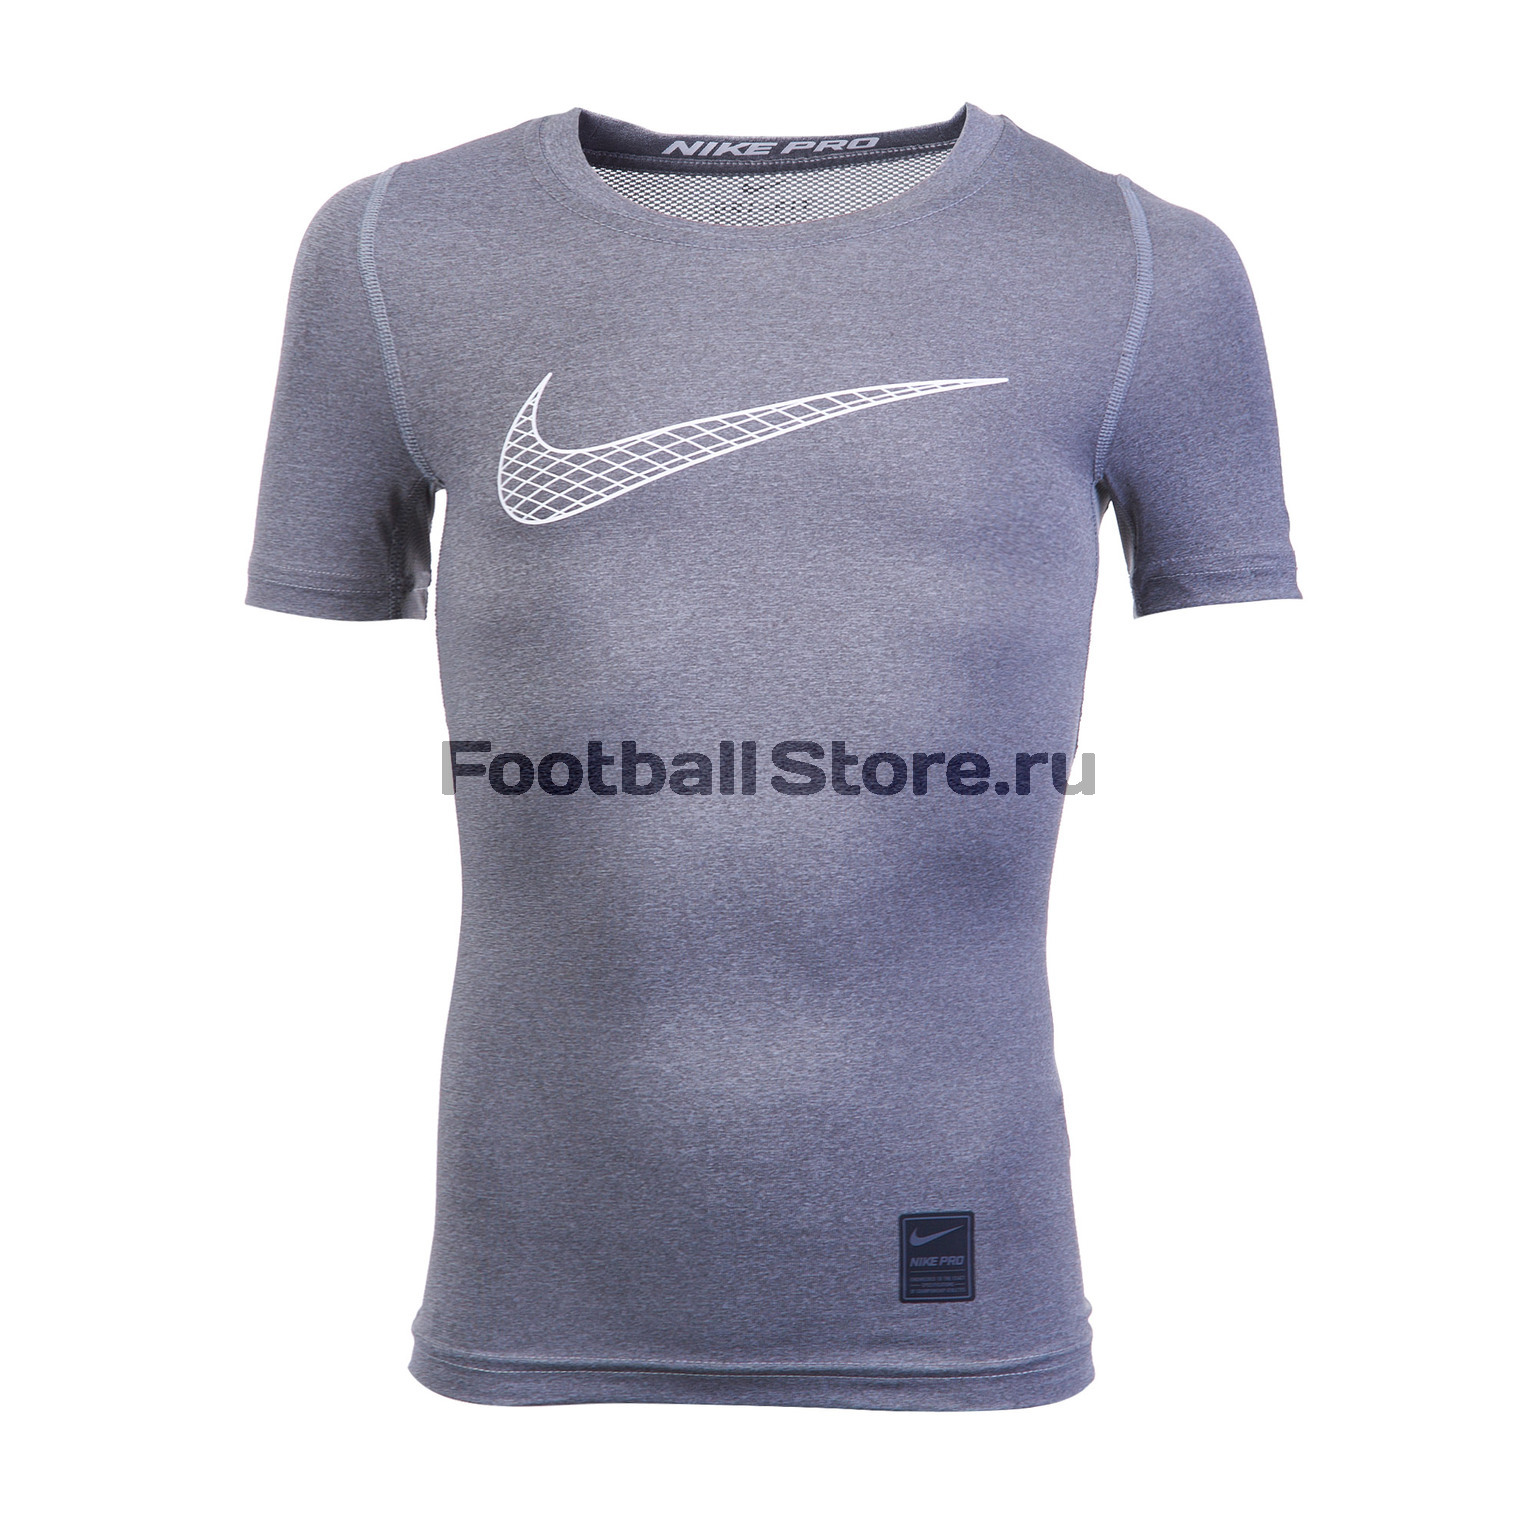 Белье футболка подростковая Nike COMP SS 858233-065